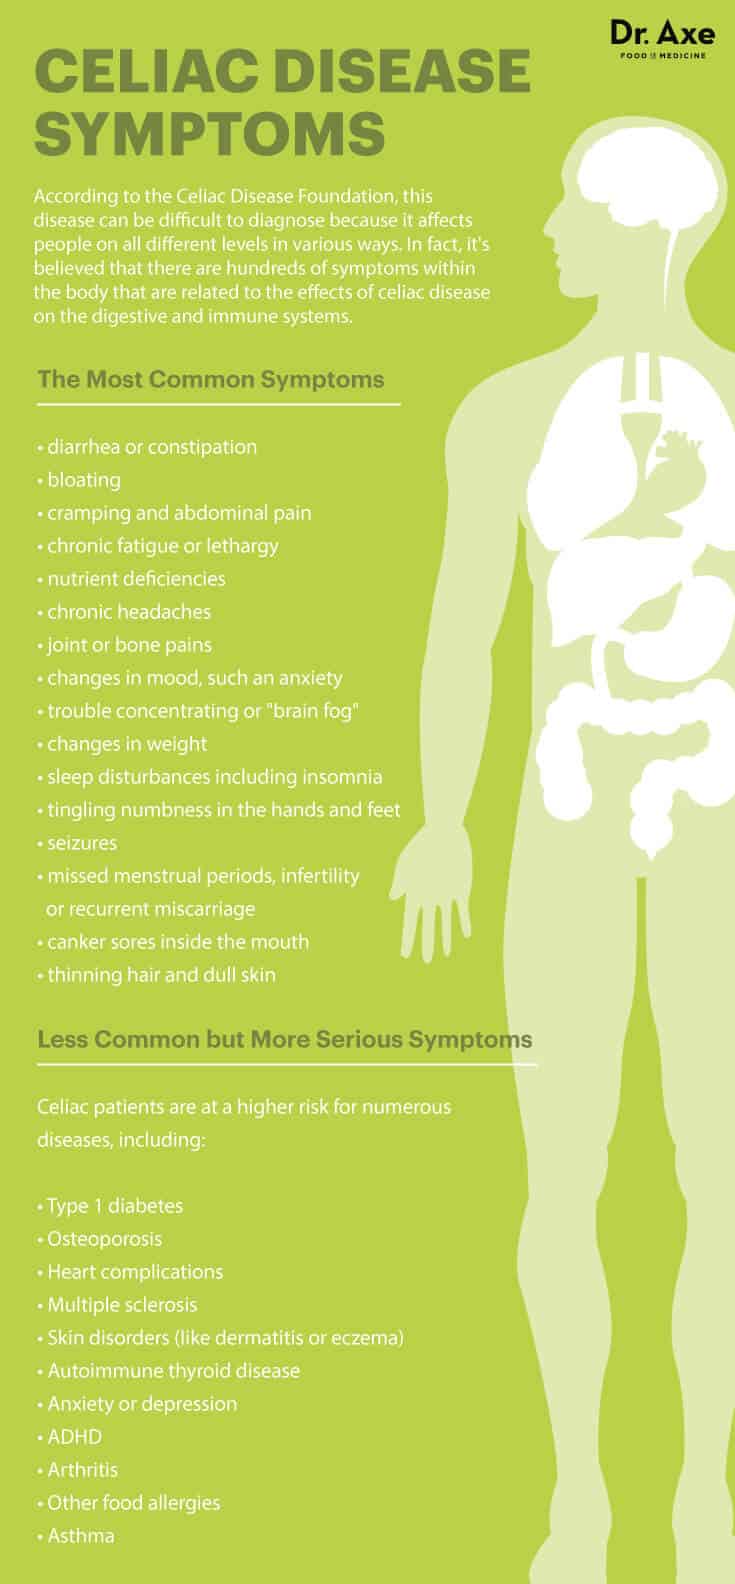 Common celiac disease symptoms and risks - Dr. Axe